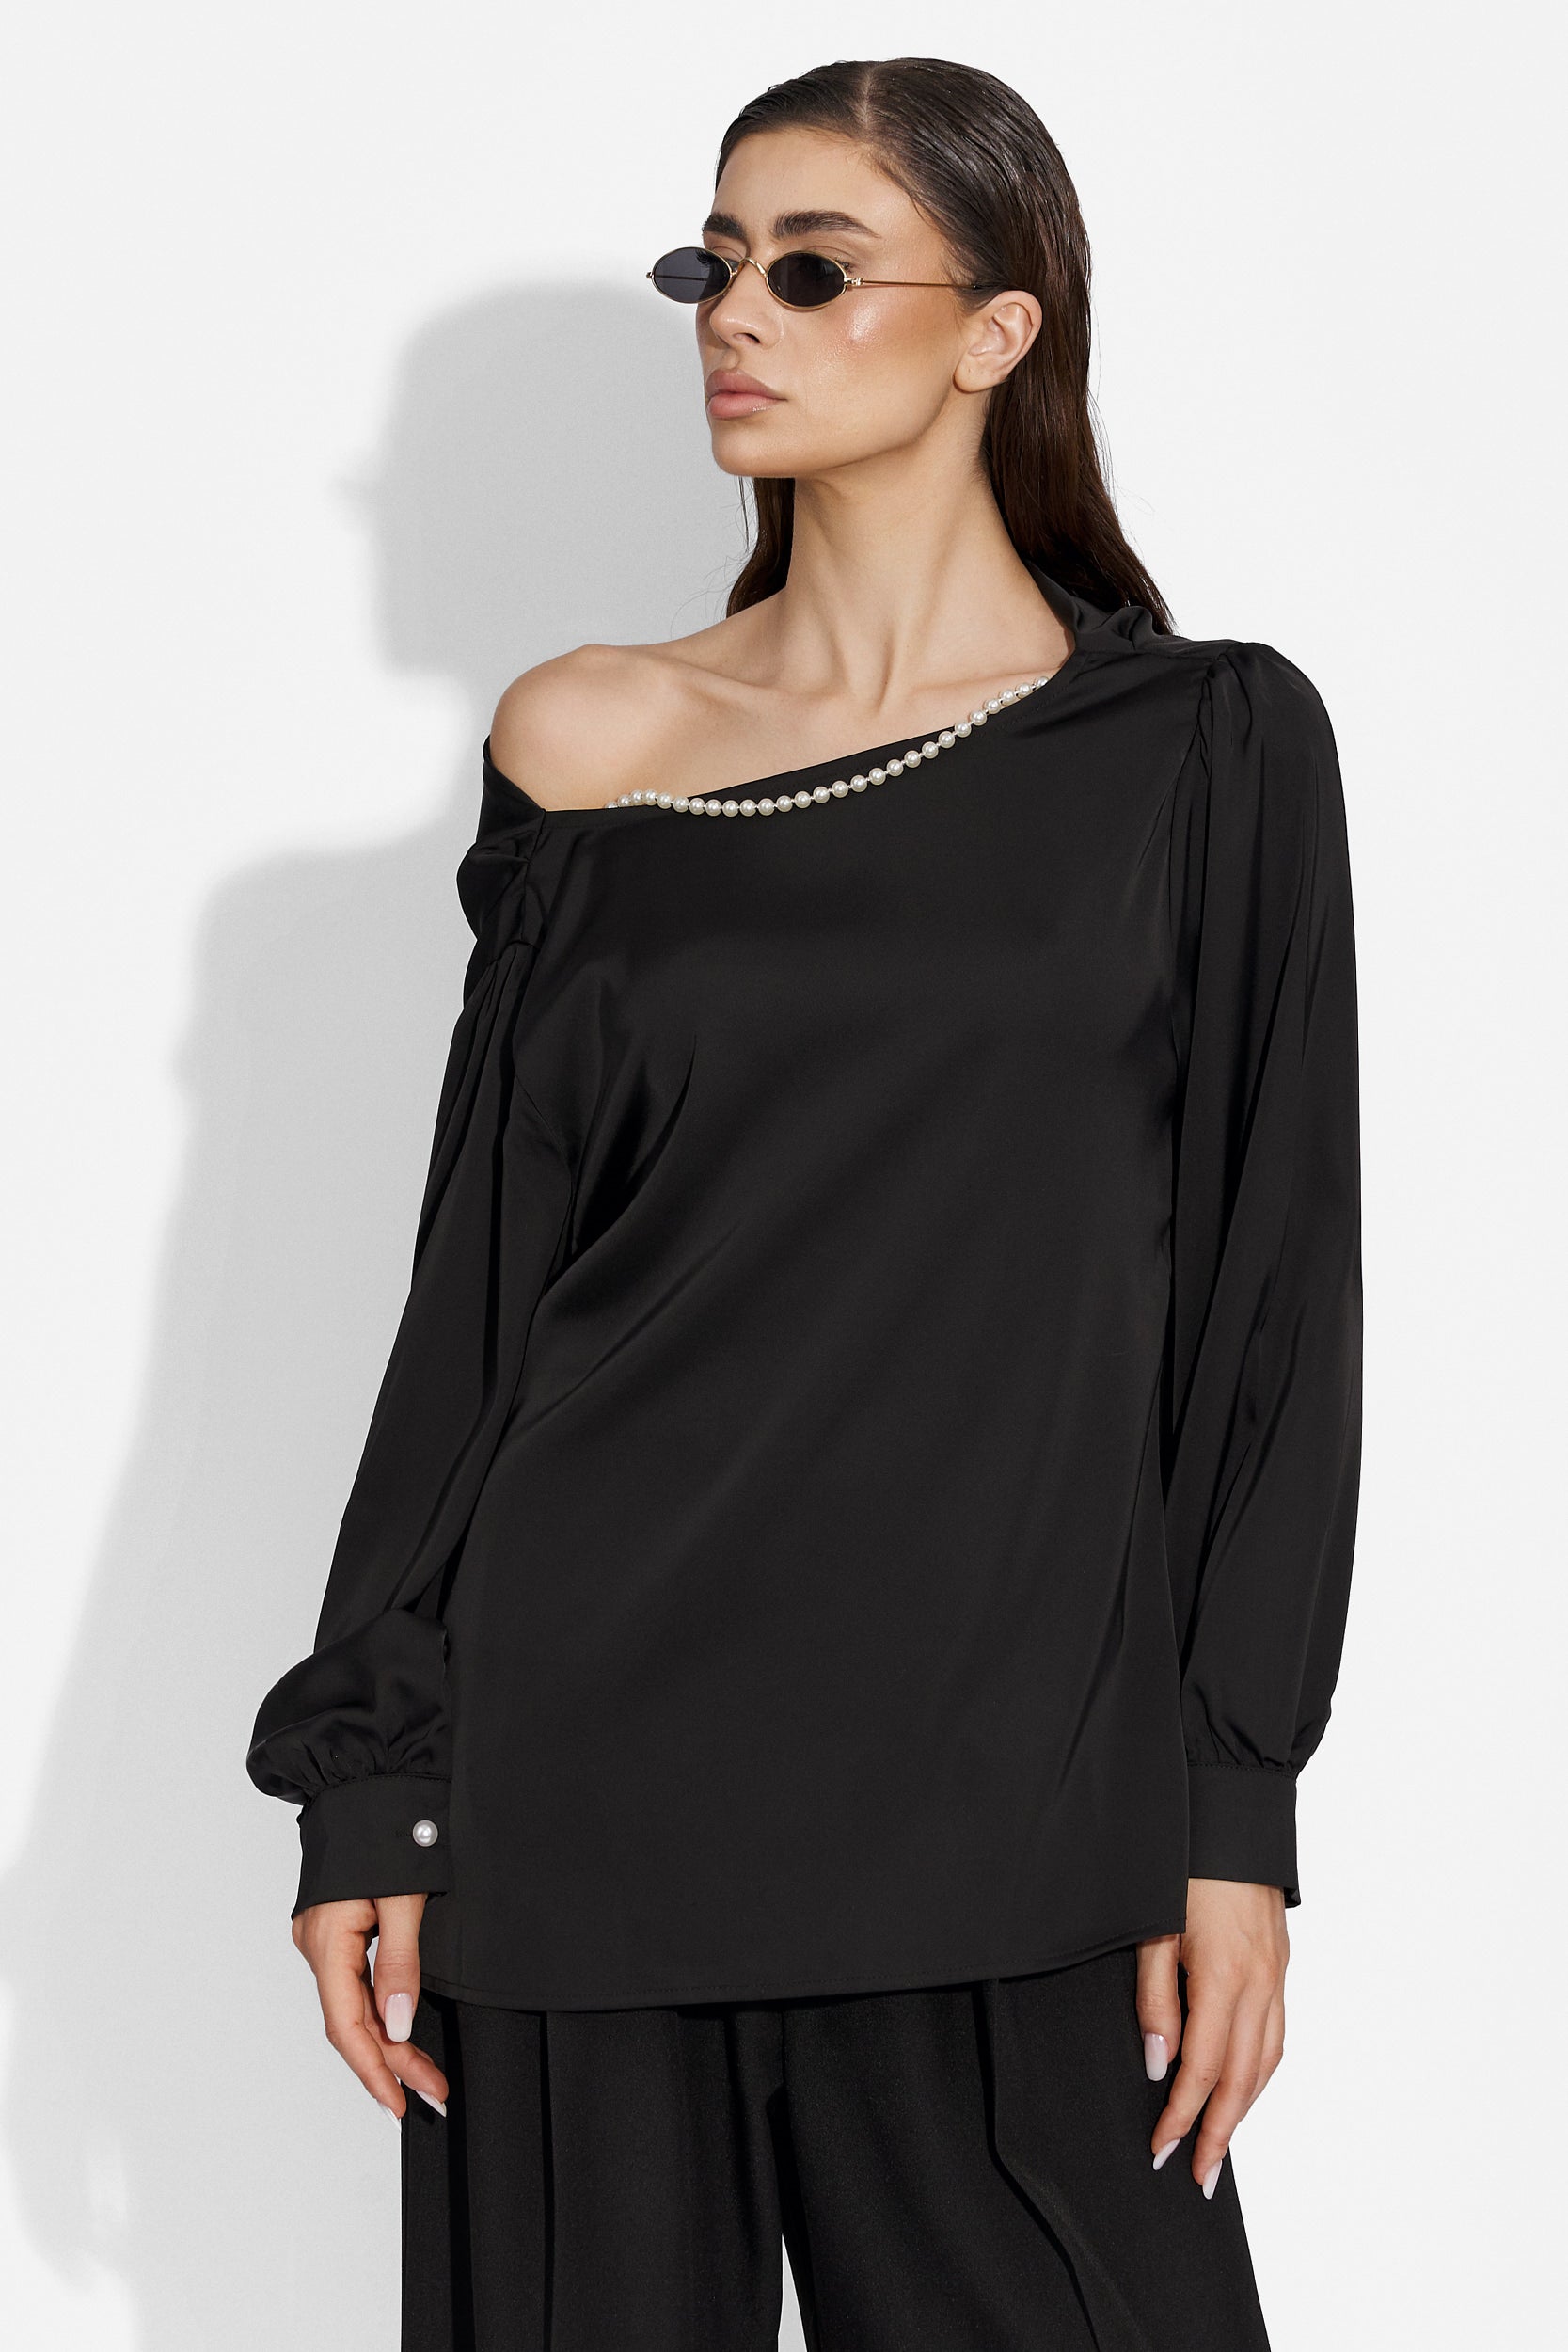 Elegant black ladies shirt Anea Bogas